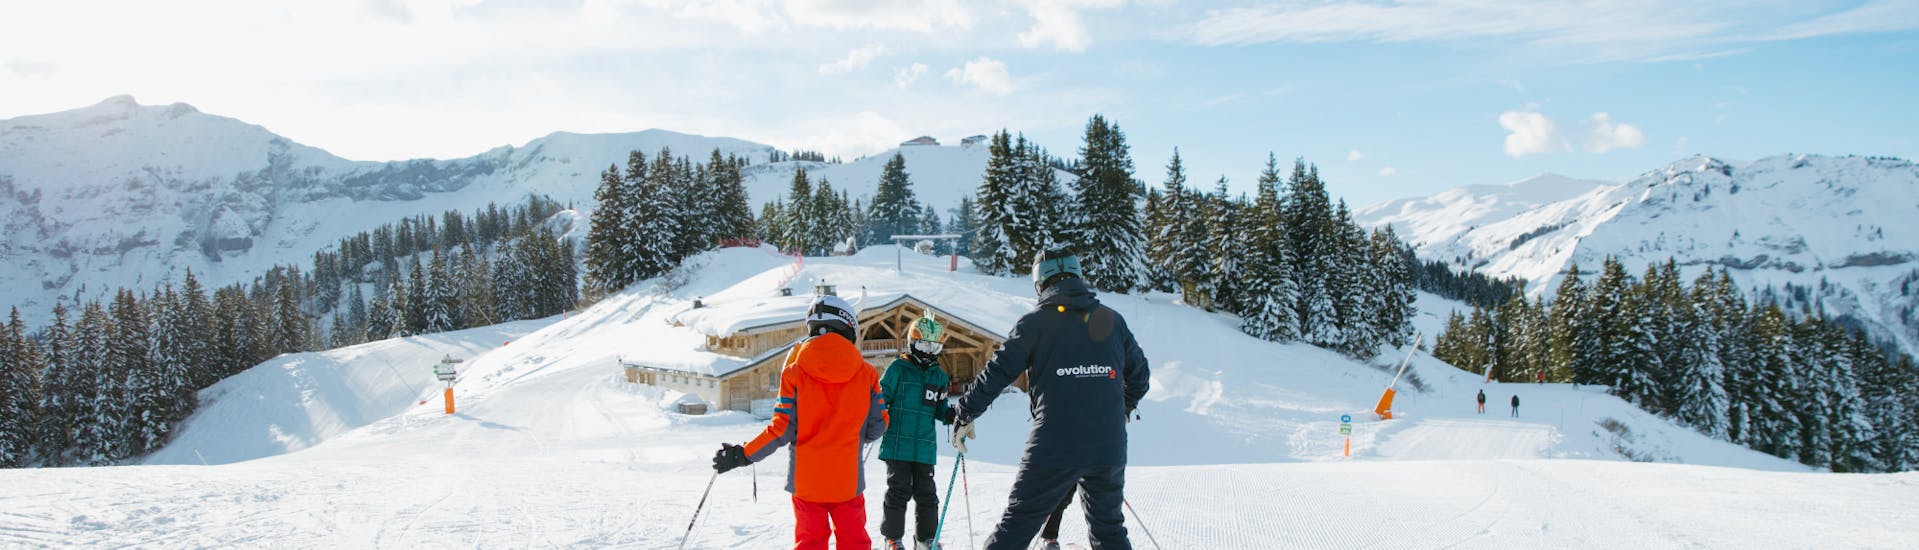 Une famille s'amuse lors de Cours particulier de ski Enfants (dès 4 ans) avec Evolution 2 Saint-Gervais.